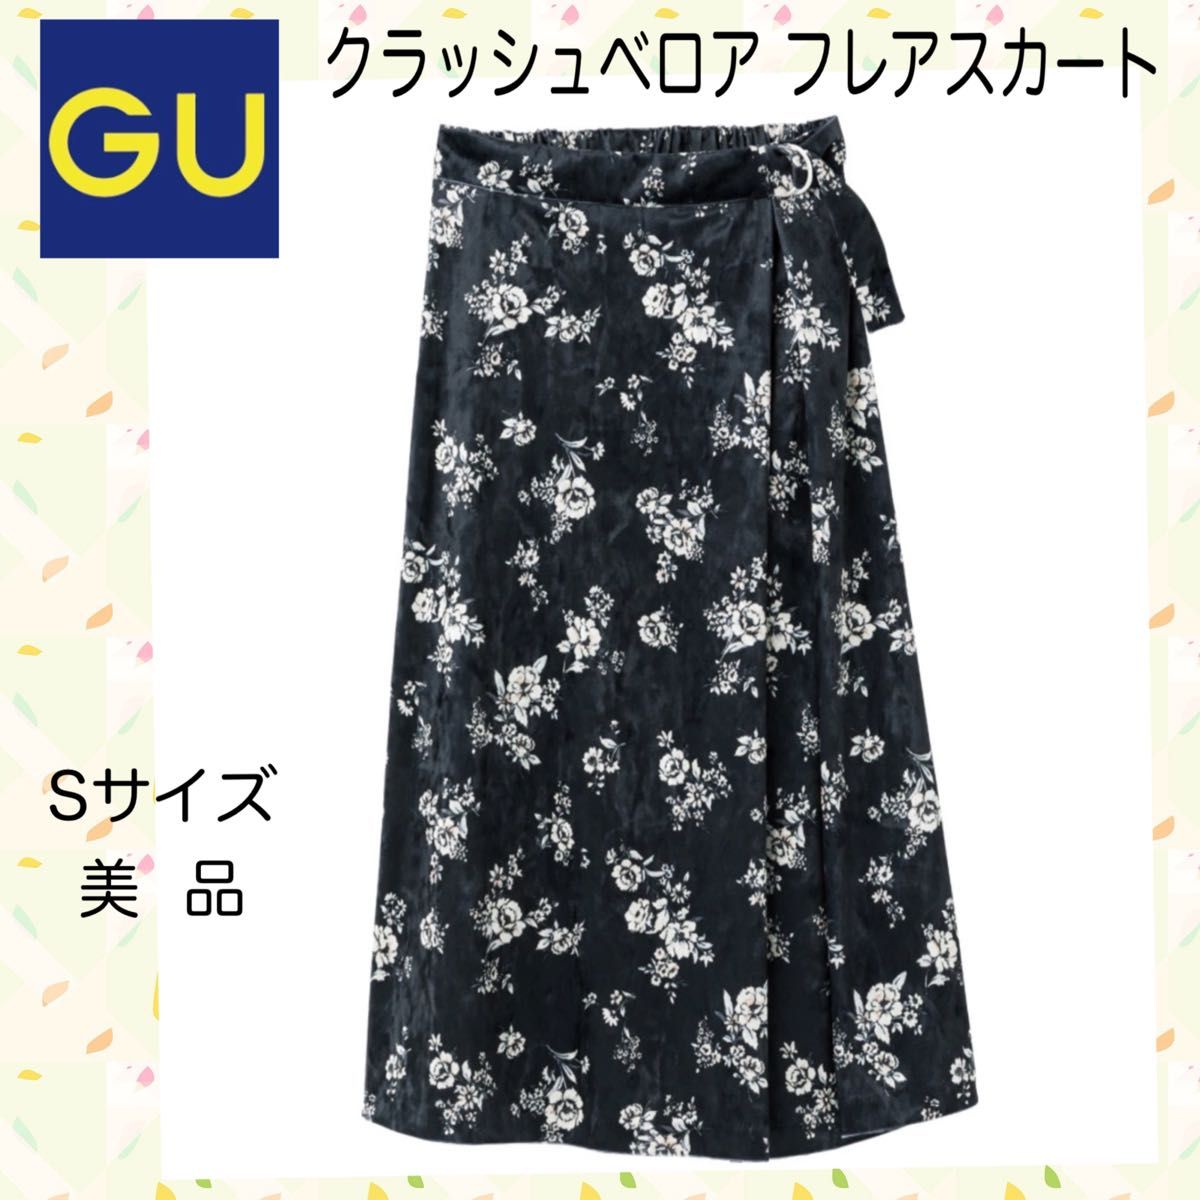 GU】ジーユー クラッシュベロアフレアスカート ブラック×花柄 Sサイズ